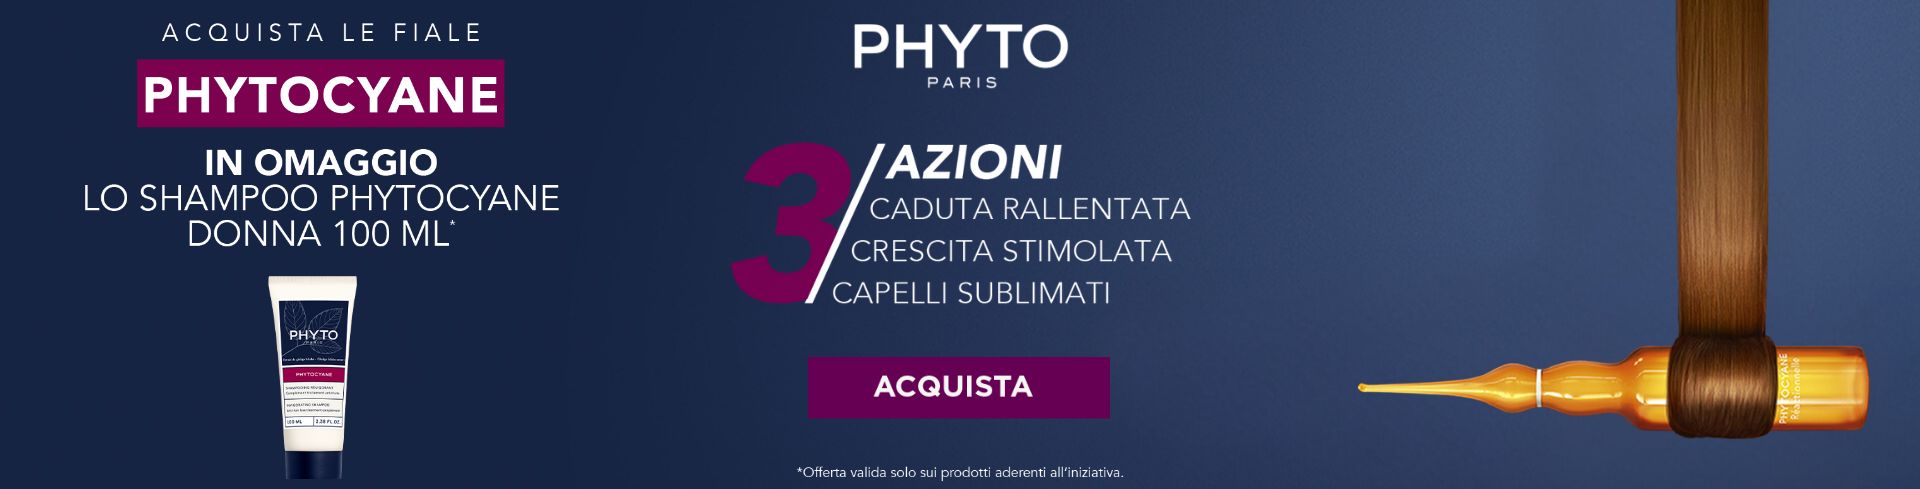 banner promozionale Phyto phytocyane shampoo 100ml omaggio desktop